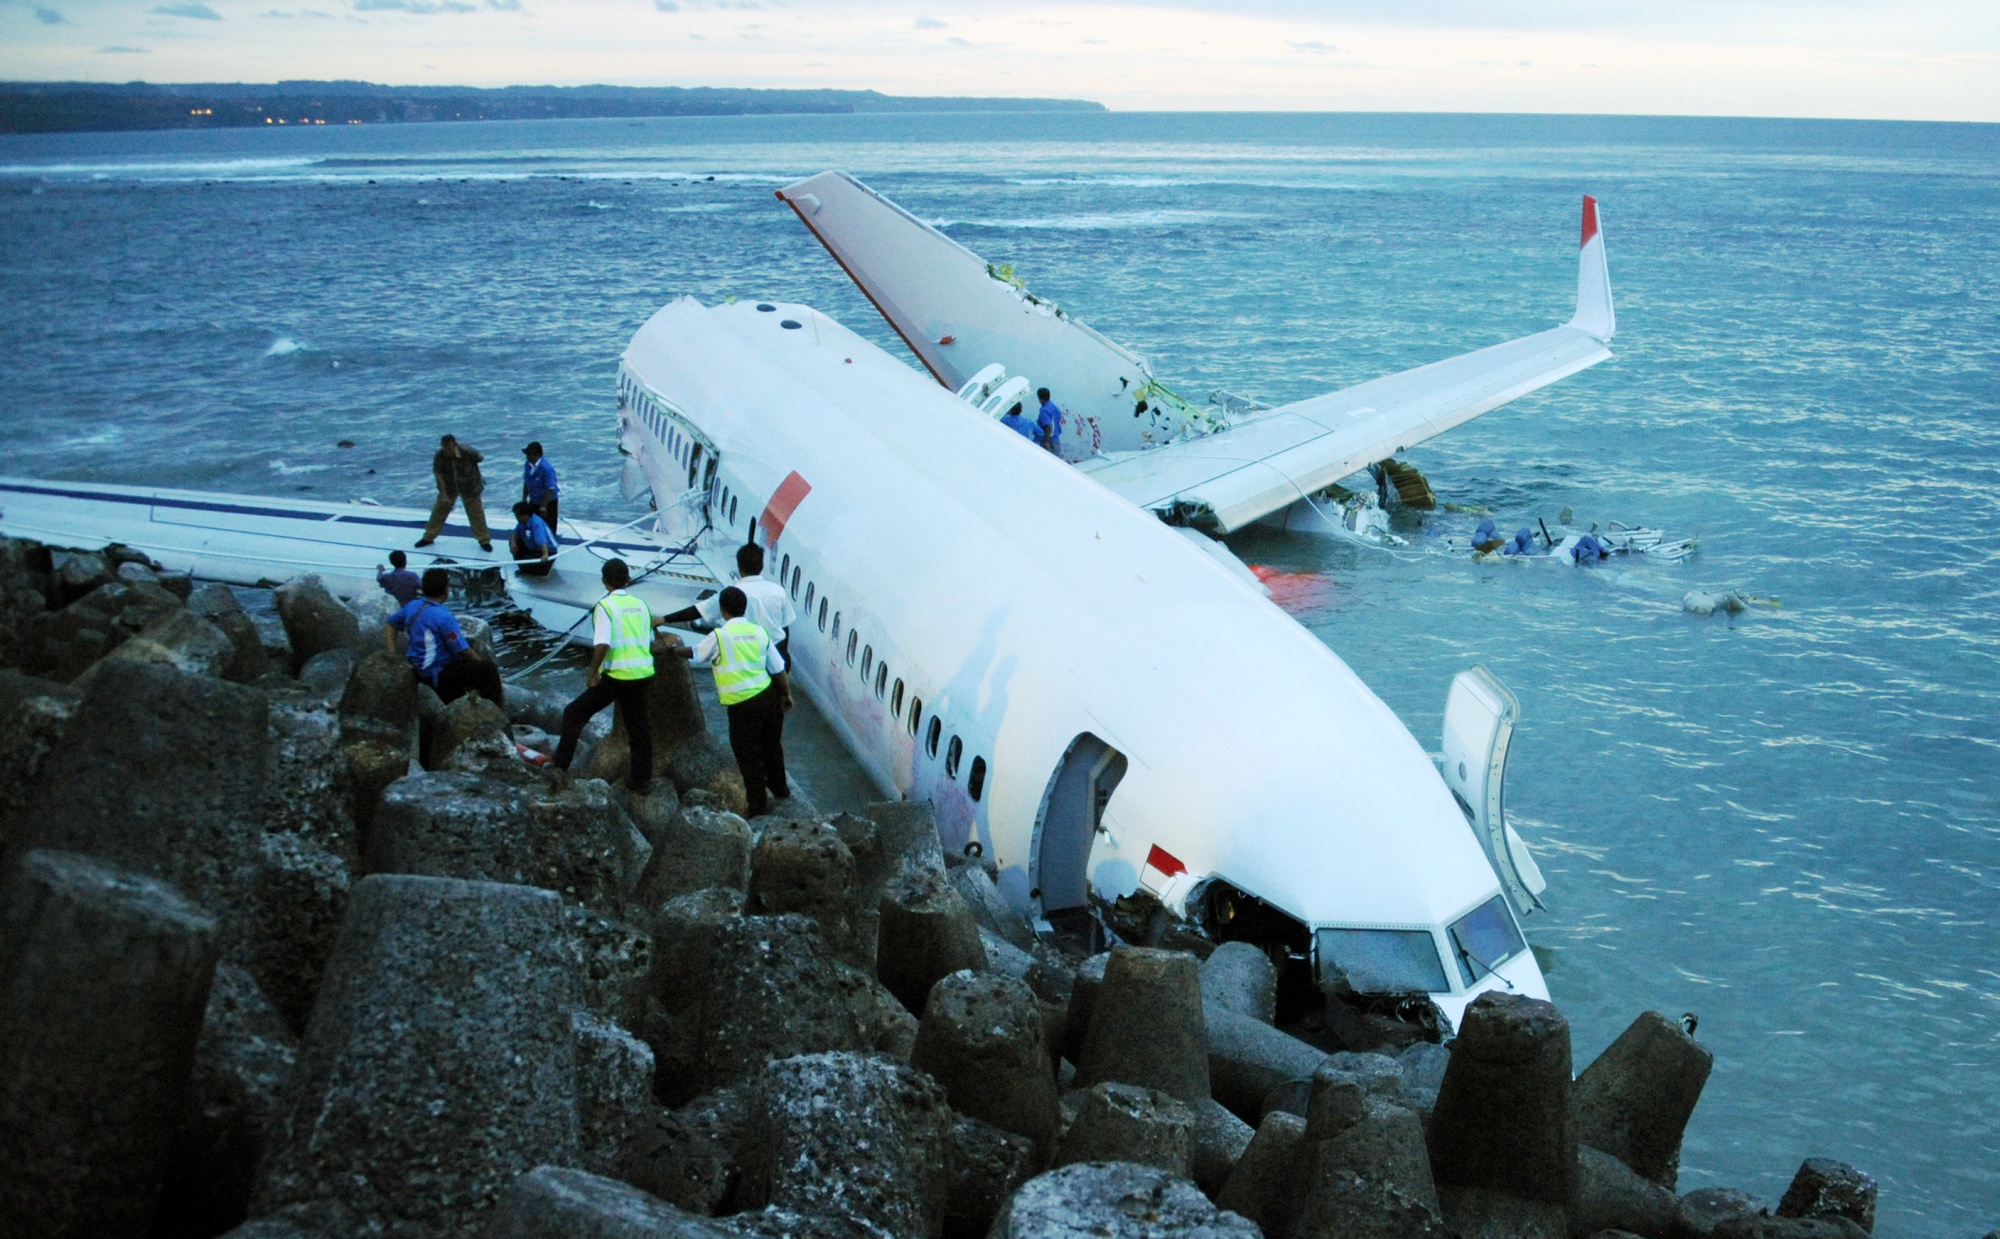 インドネシアでライオン・エアのボーイング機墜落、 189人搭乗